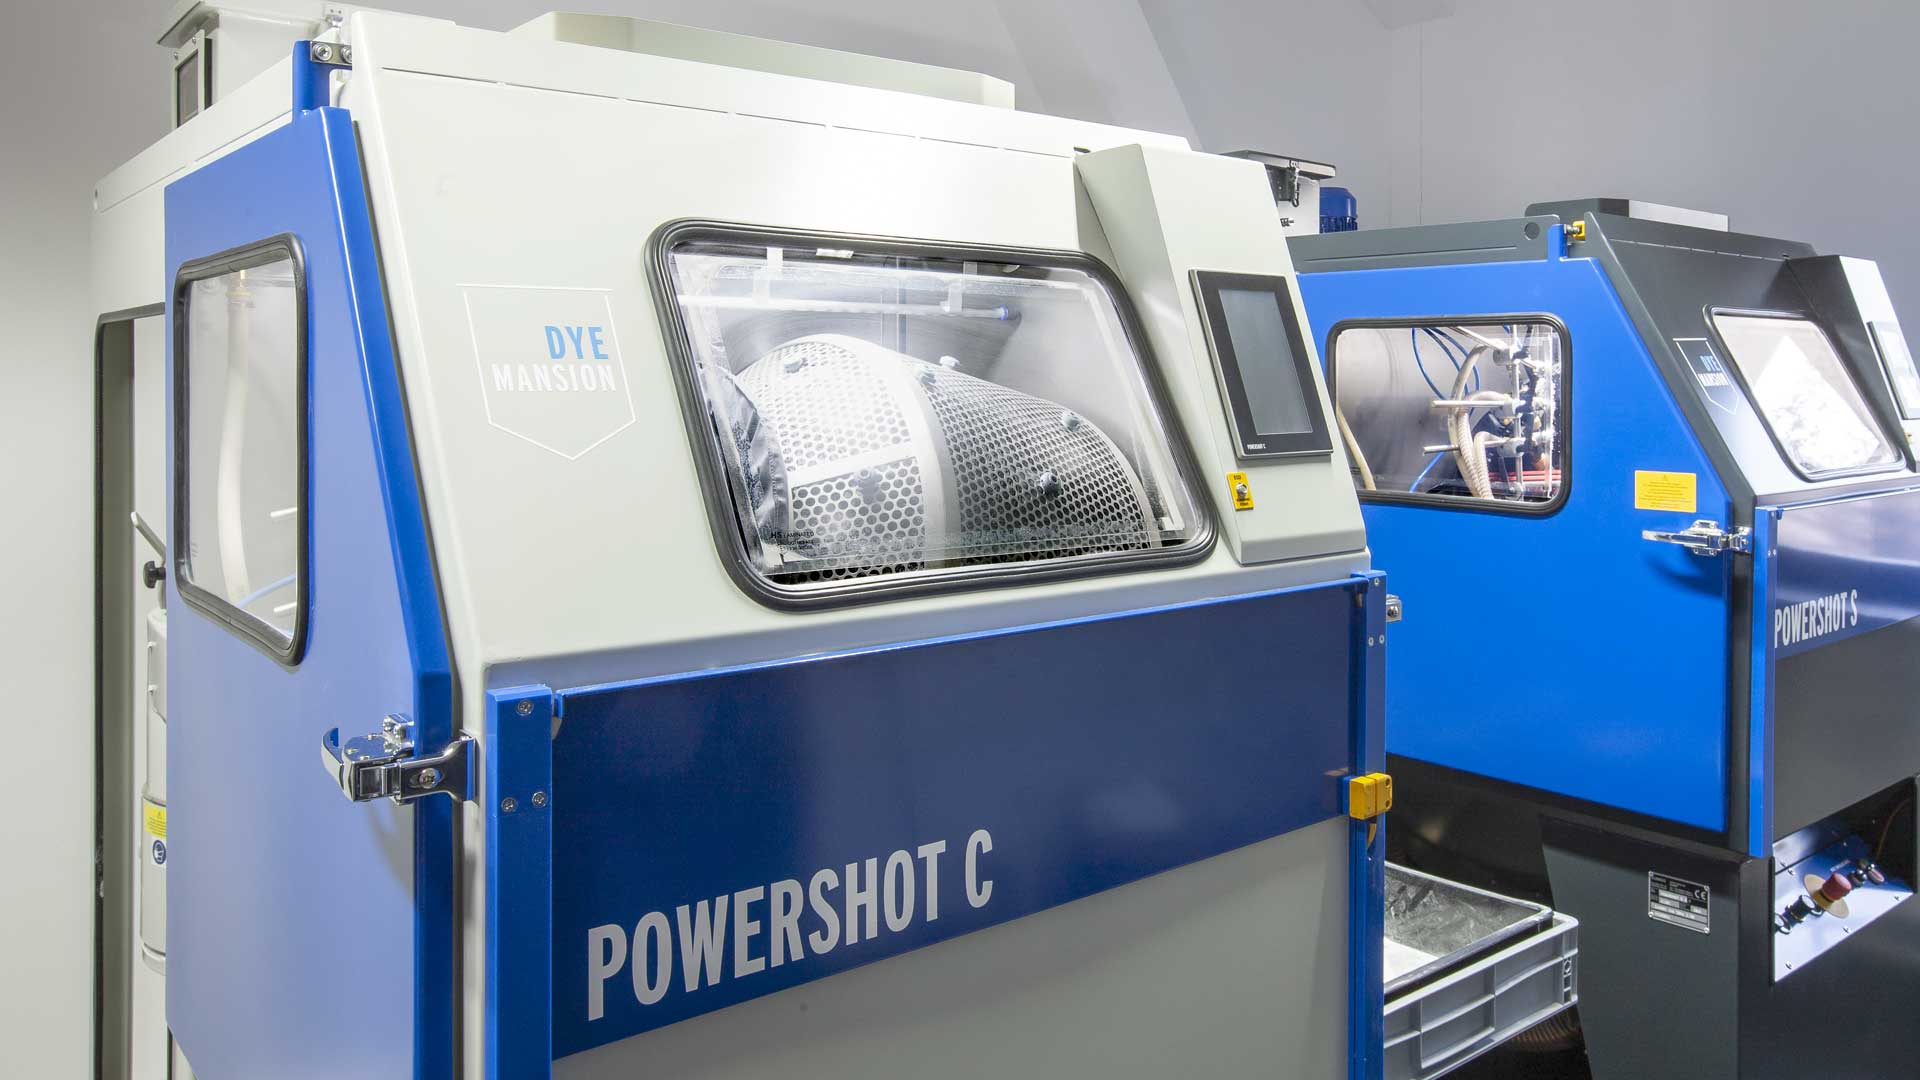 DyeMansion Powershot C - Strahlen mit Glasperlen zum Entpulvern von Bauteilen | W-3D GmbH & Co. KG